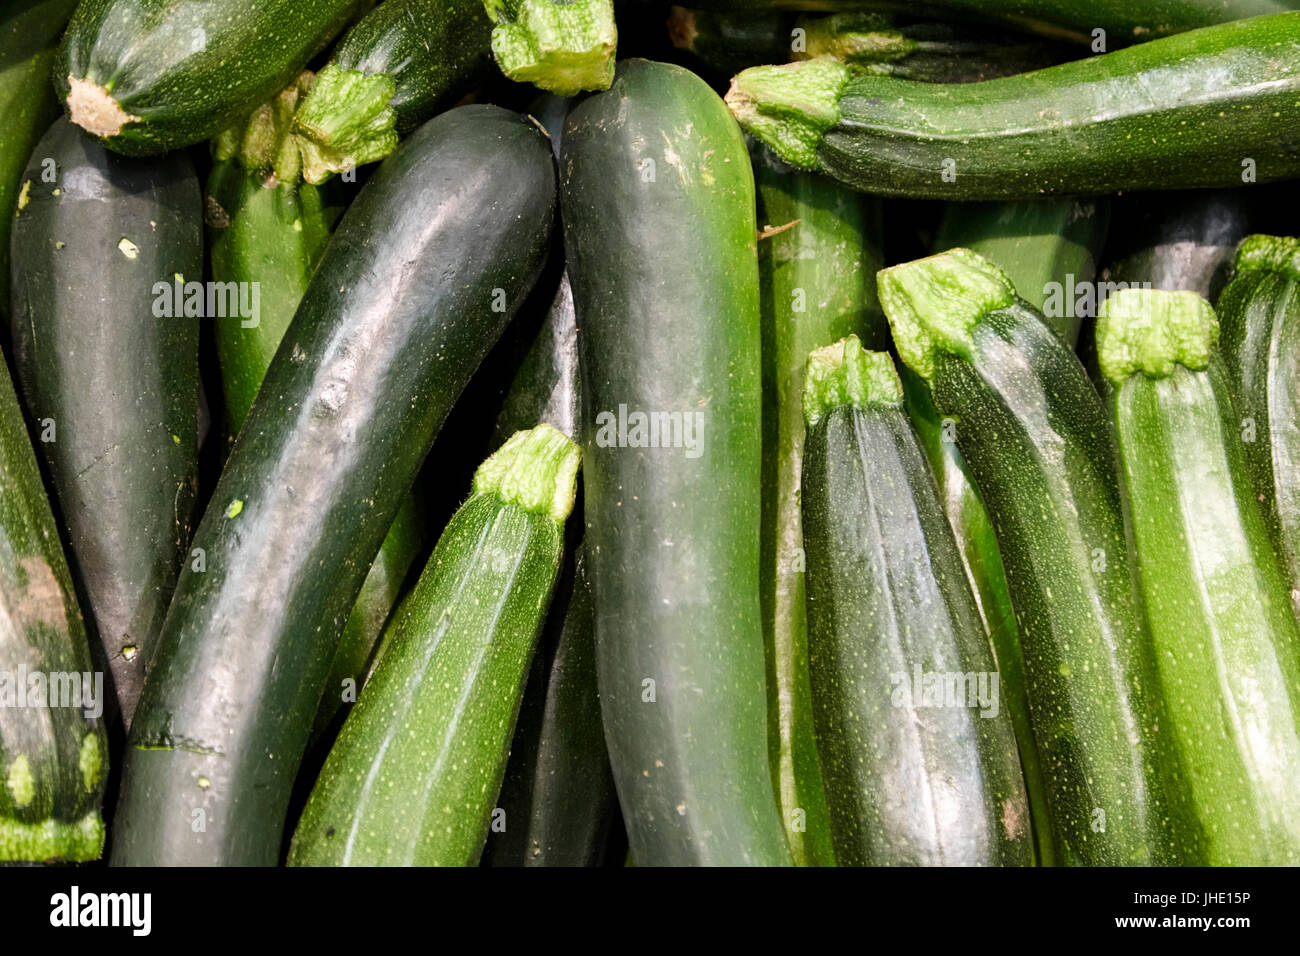 Le zucchine fresche o anche conosciuto come le zucchine Foto Stock